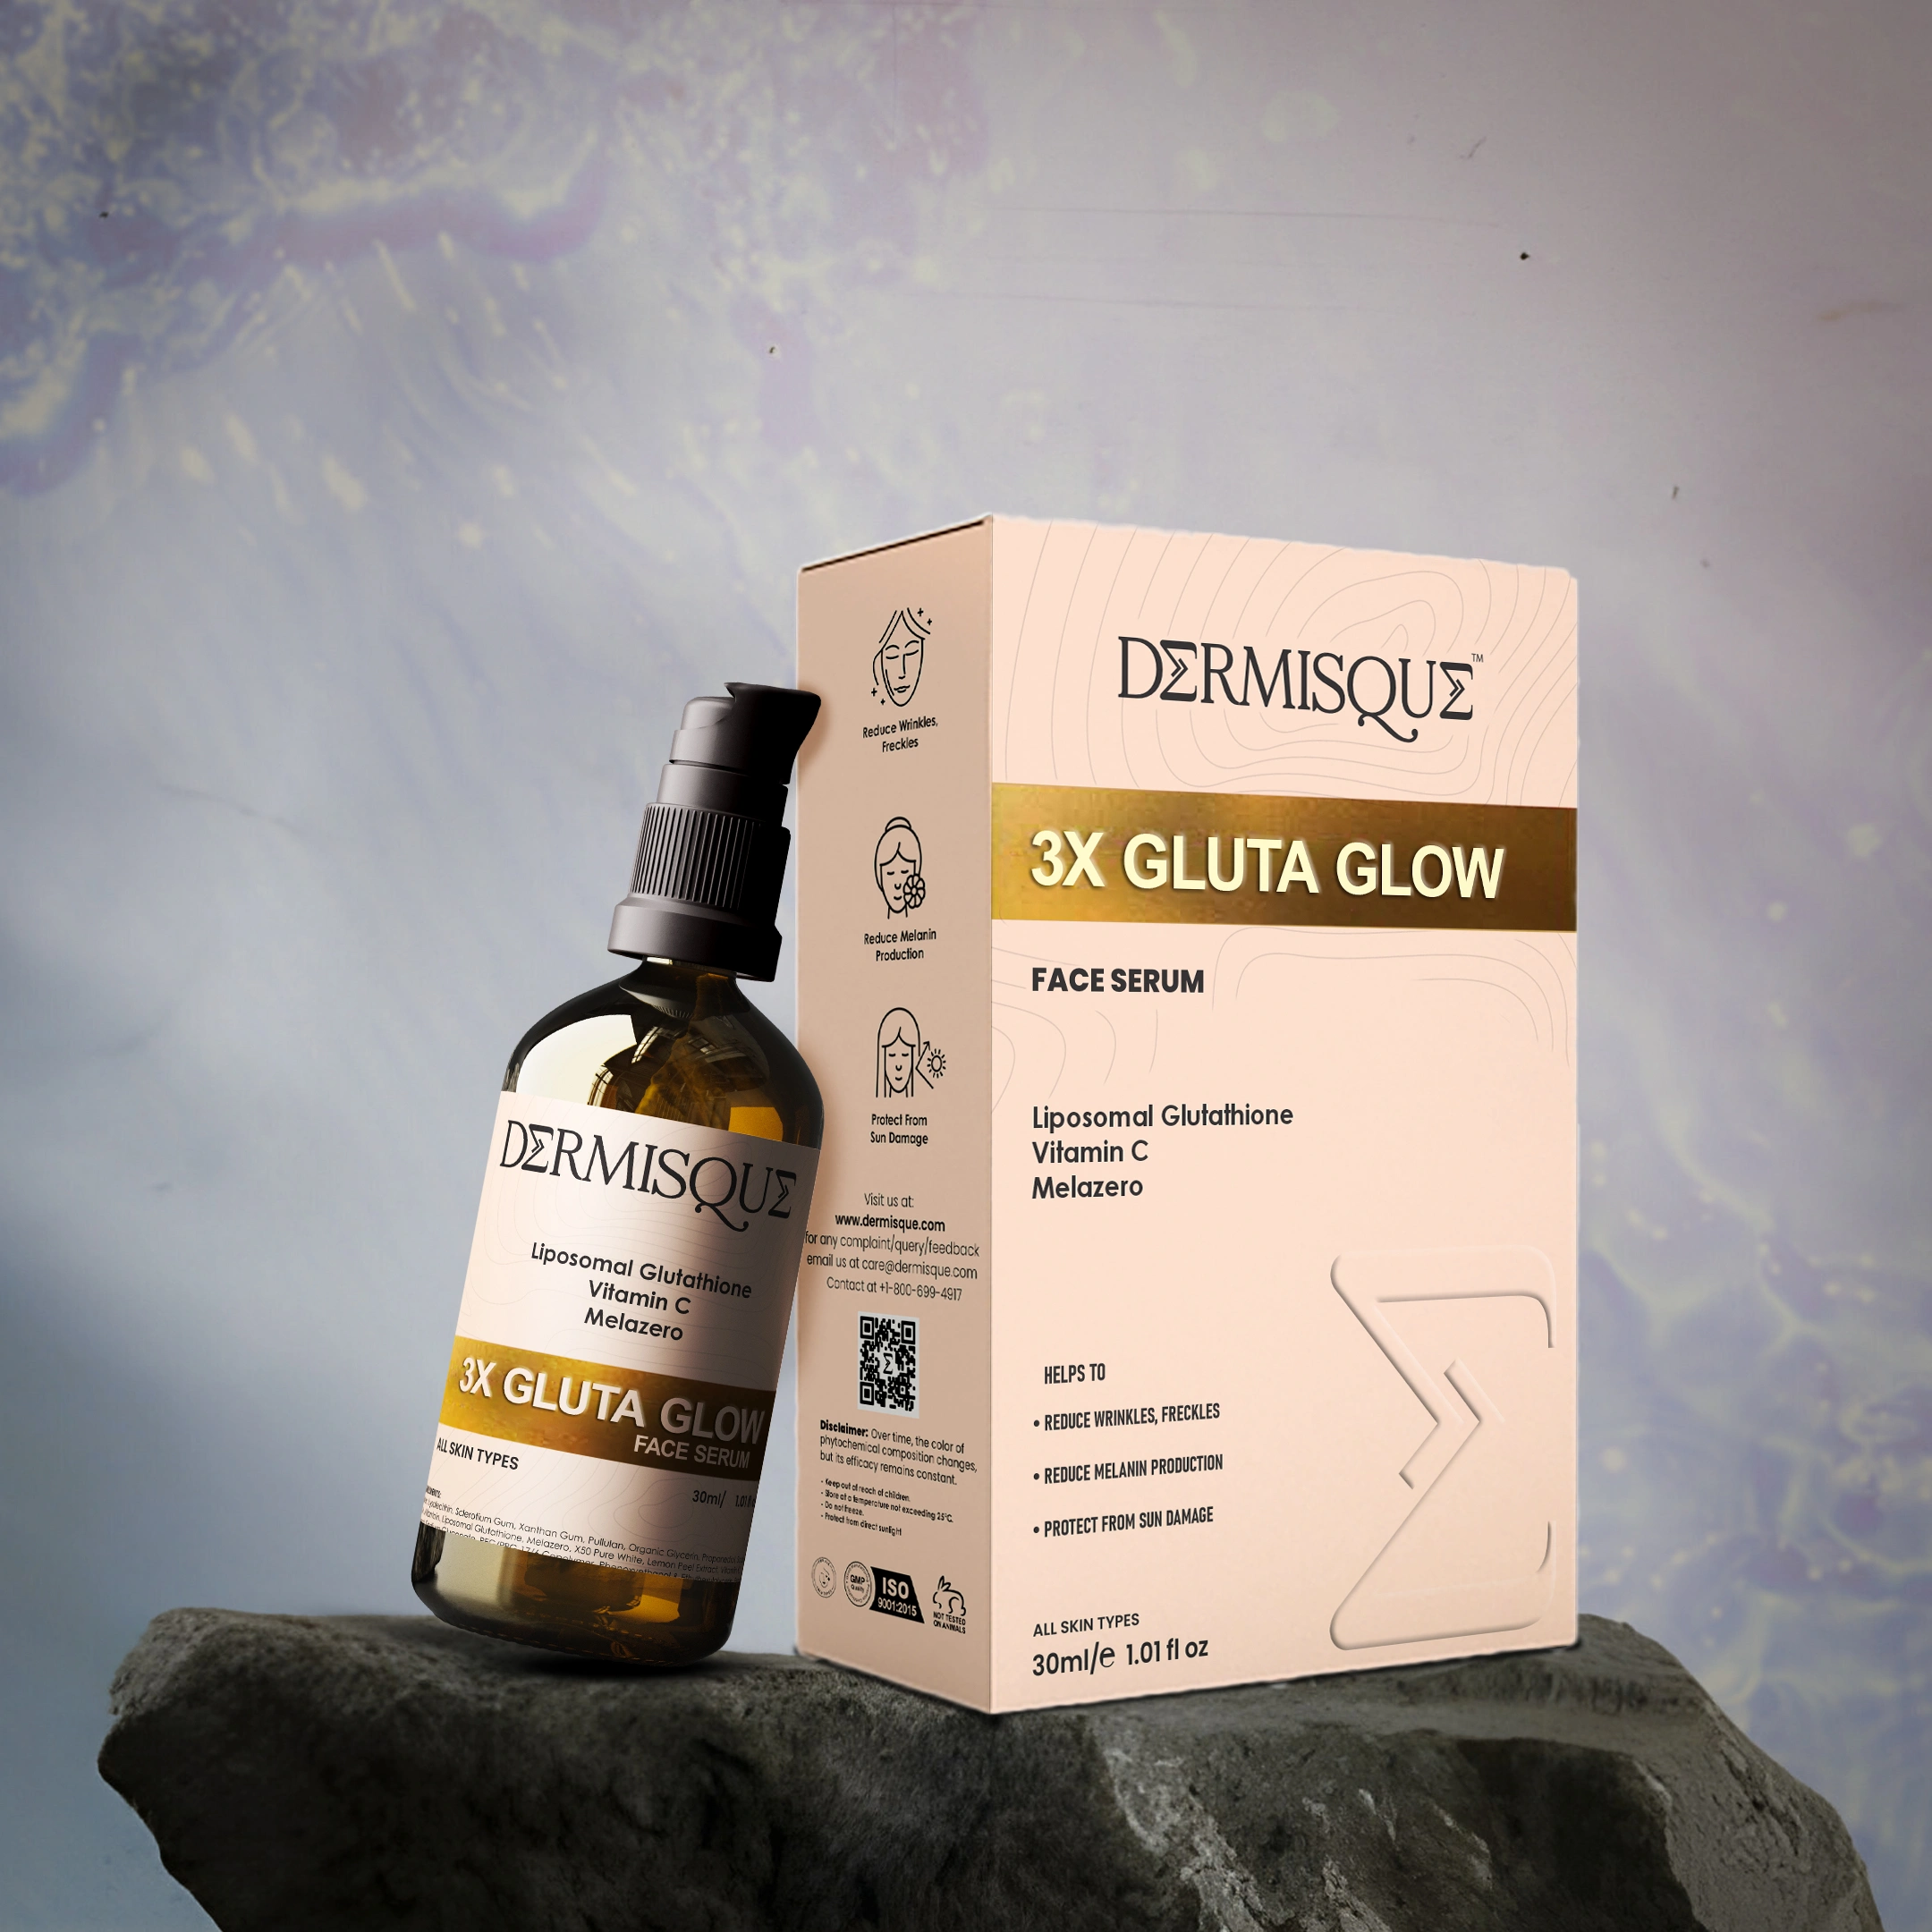 Dermisque 3X Gluta Glow Face Serum